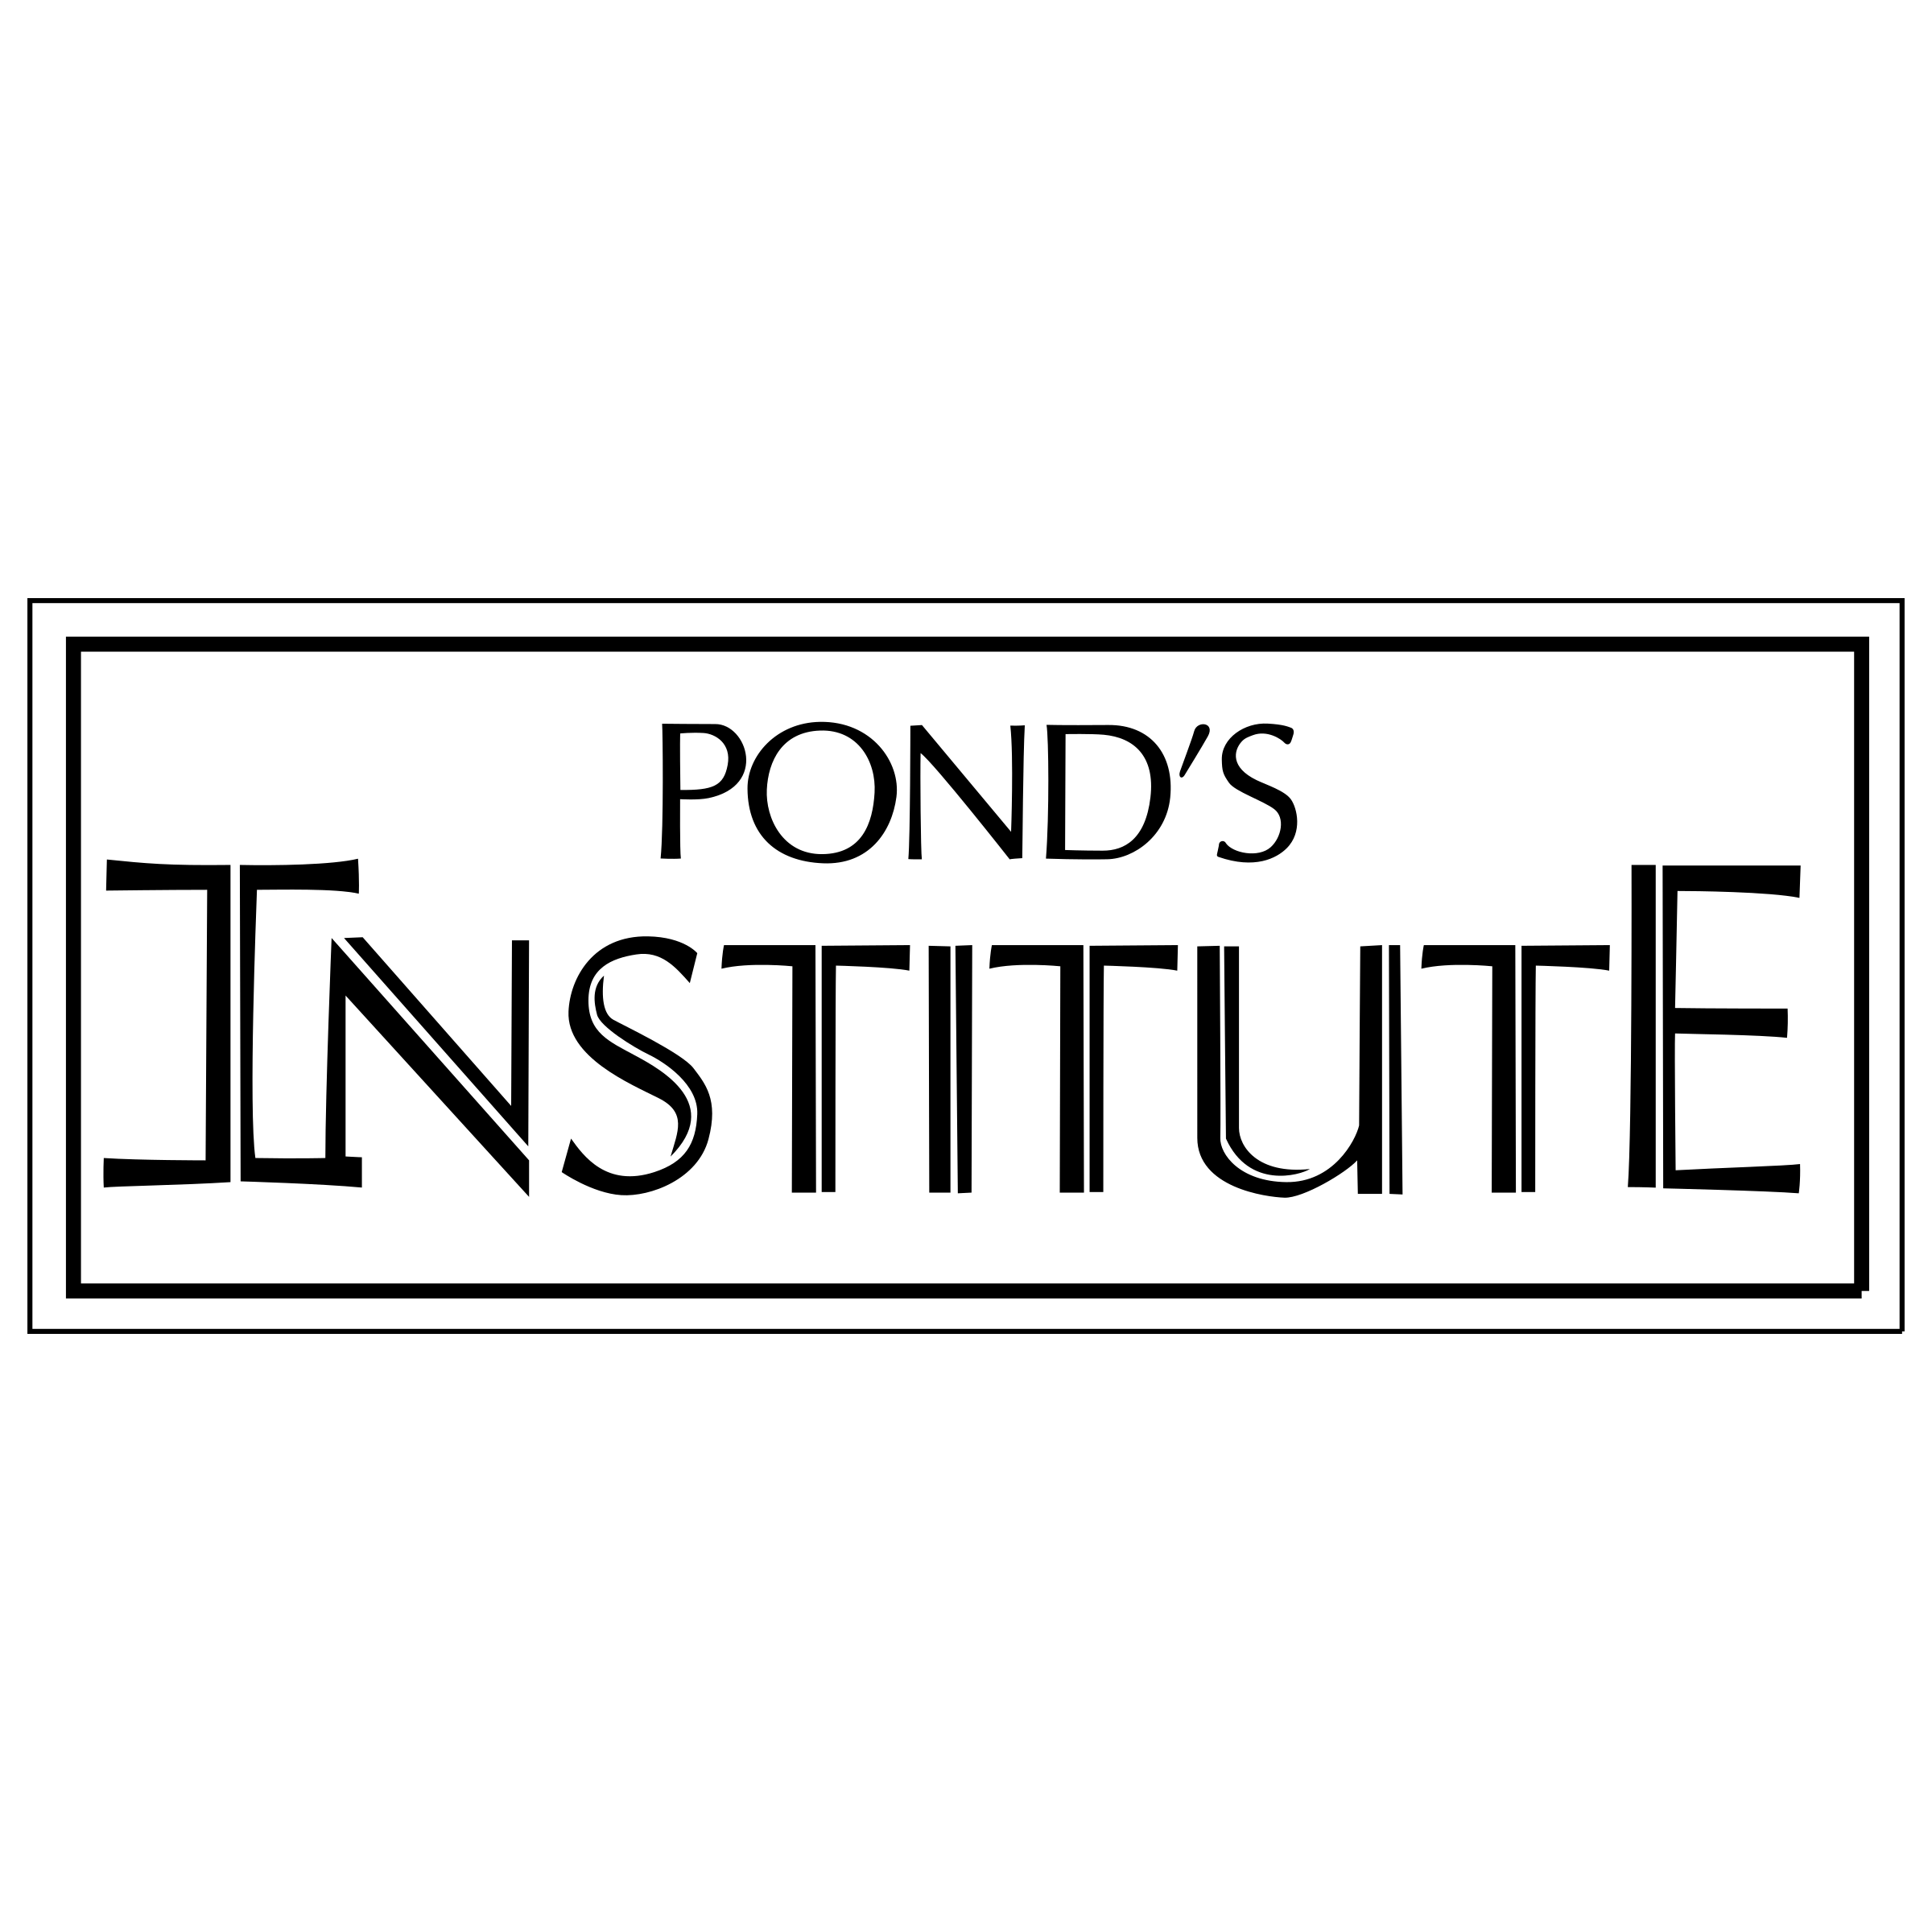 Ponds Logo - Pond's Institute Logo PNG Transparent & SVG Vector - Freebie Supply